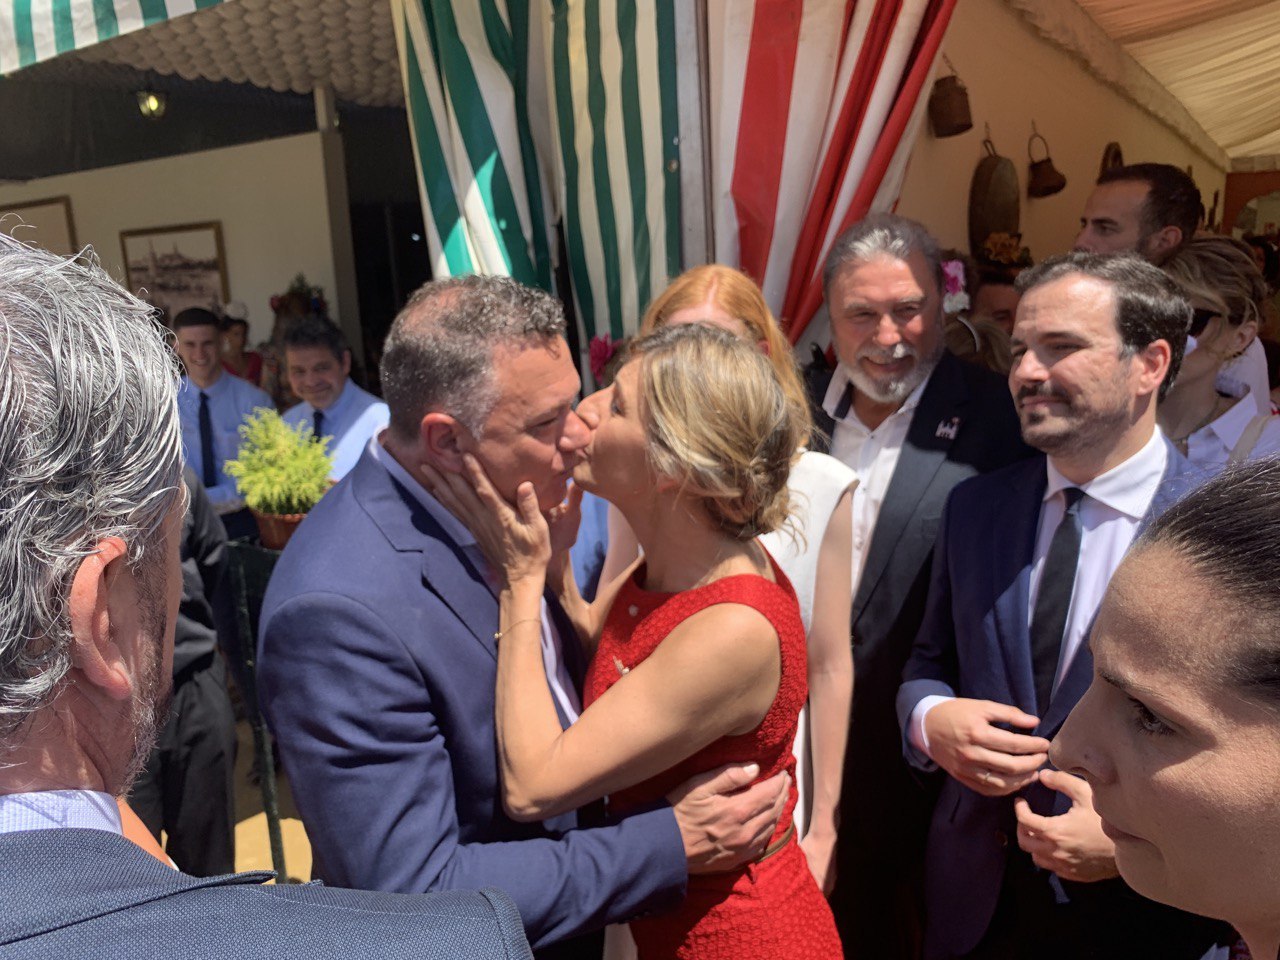 Juan Antonio Delgado recibe un beso de Yolanda Daz, durante su encuentro en la Feria de Sevilla, en una imagen difundida en sus redes sociales.